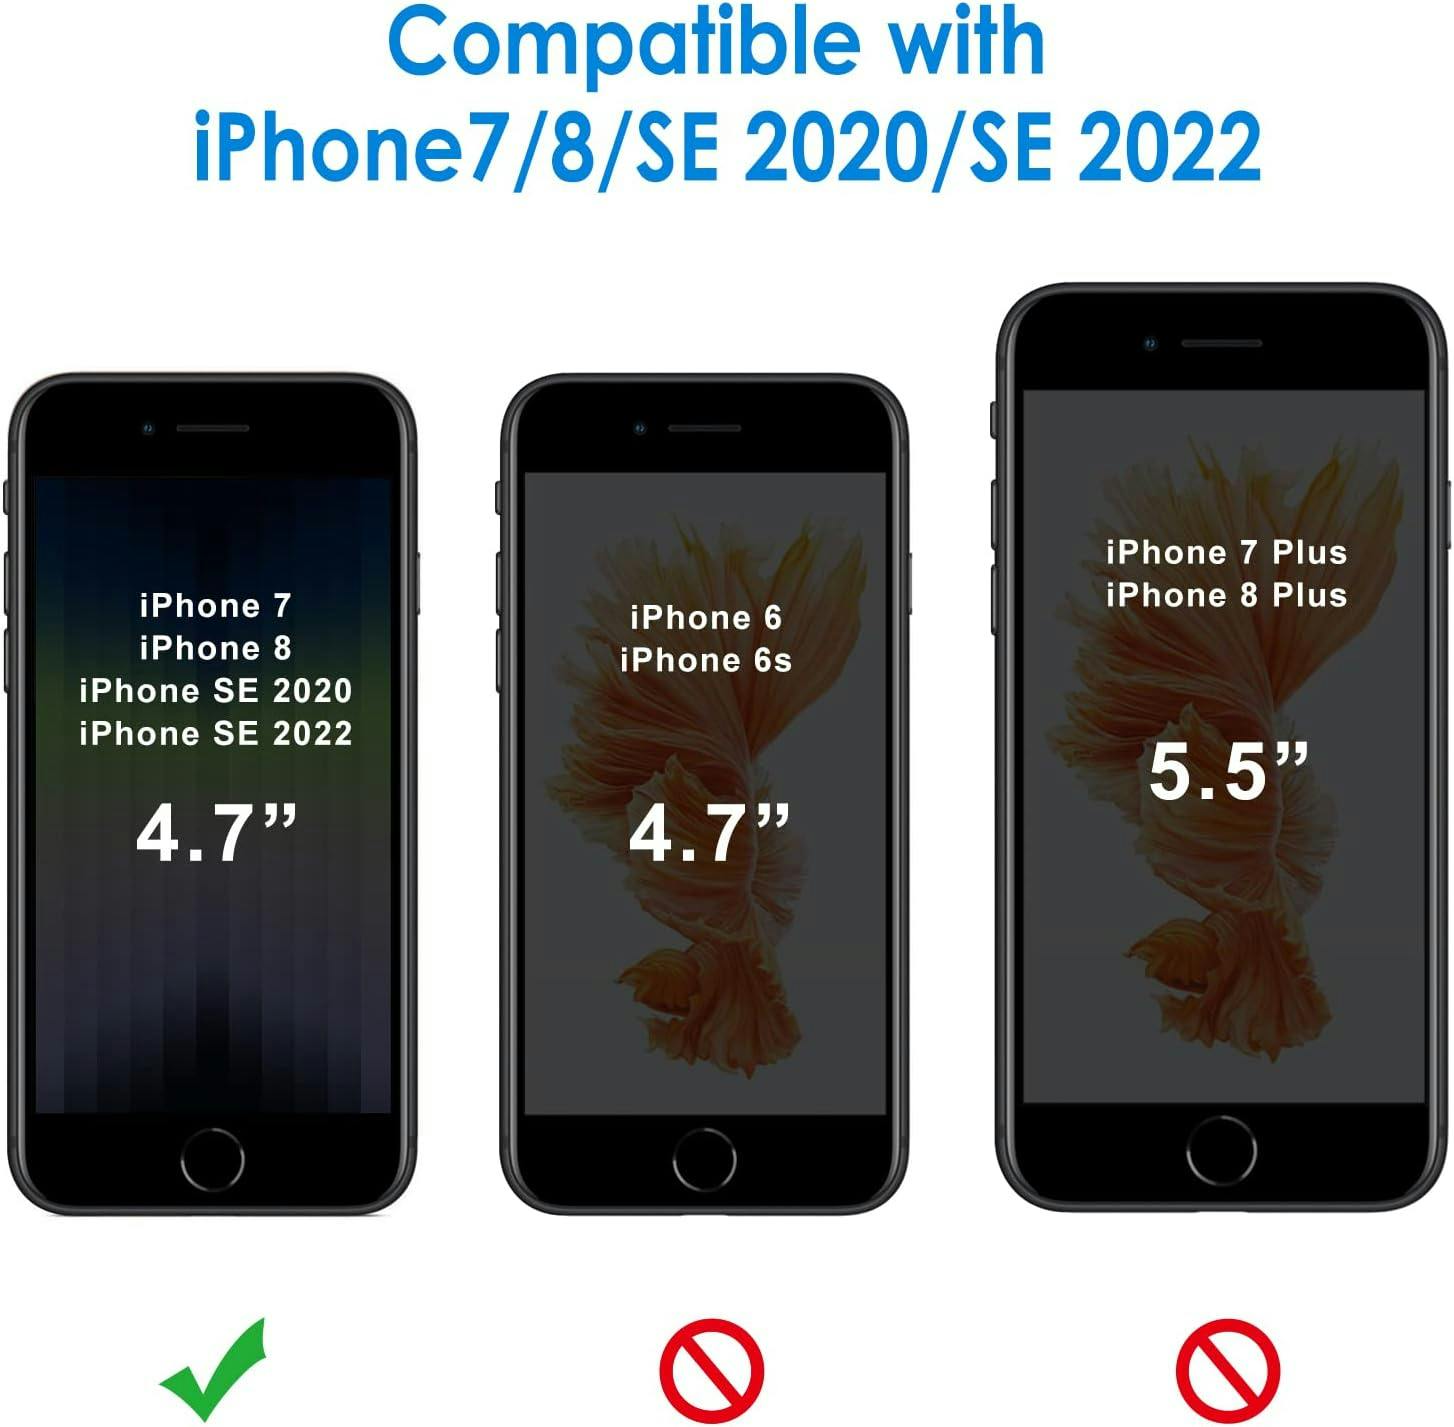 iPhone 7/8/SE (2020) Genomskinligt Mjukt Slimmat Skal i TPU